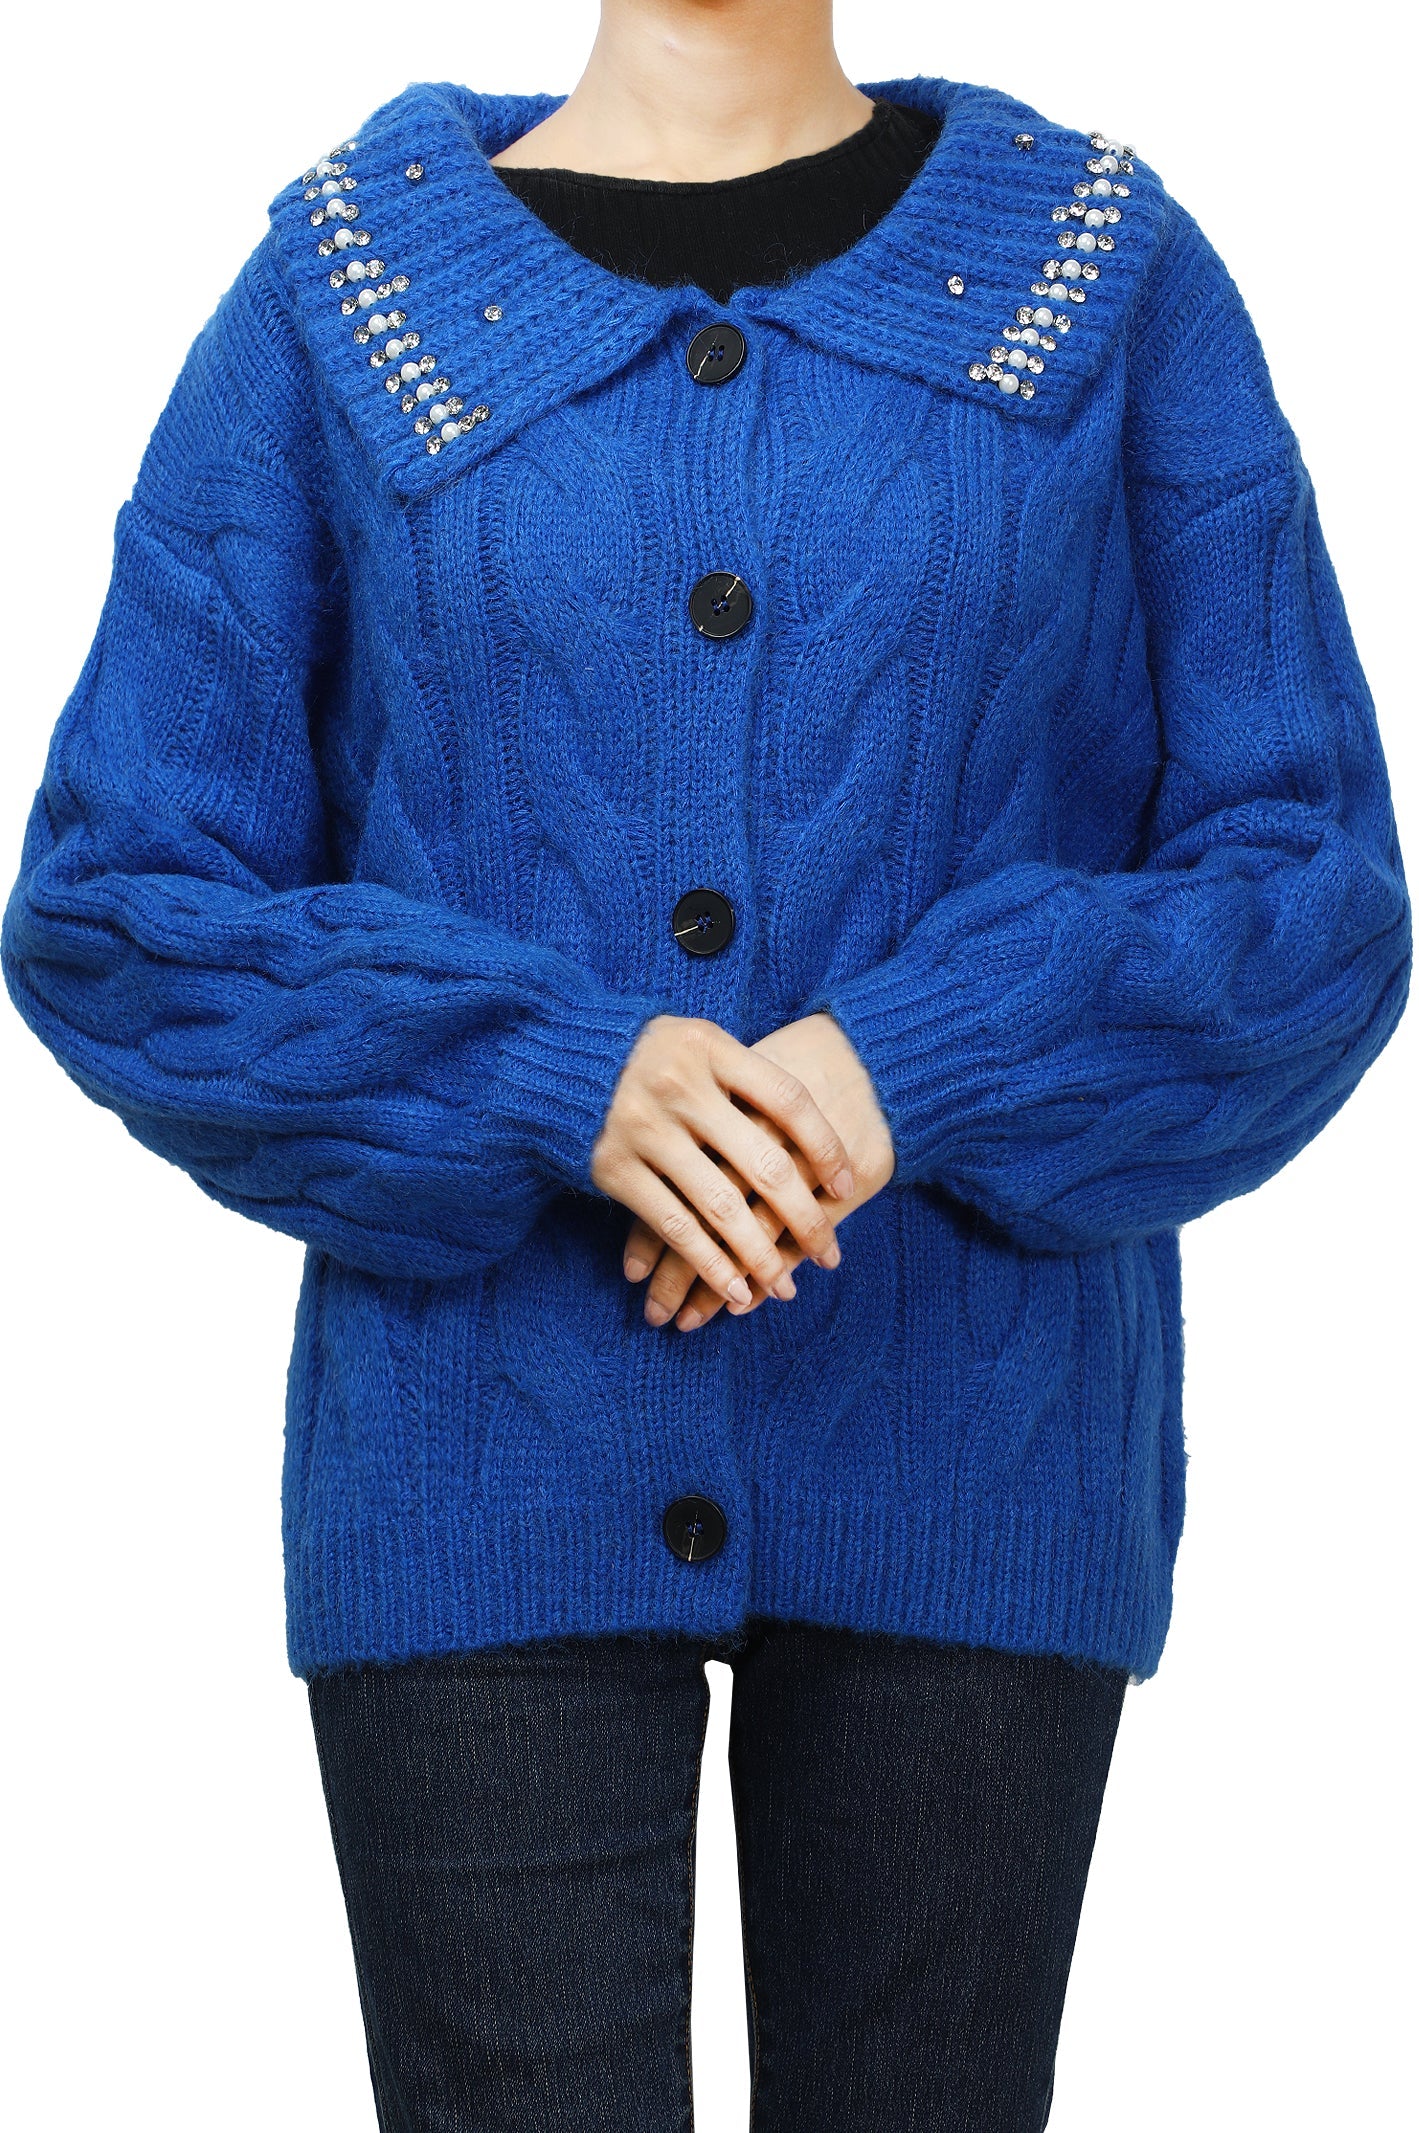 Ladies Sweater SKU: SL990-R-BLUE - Diners